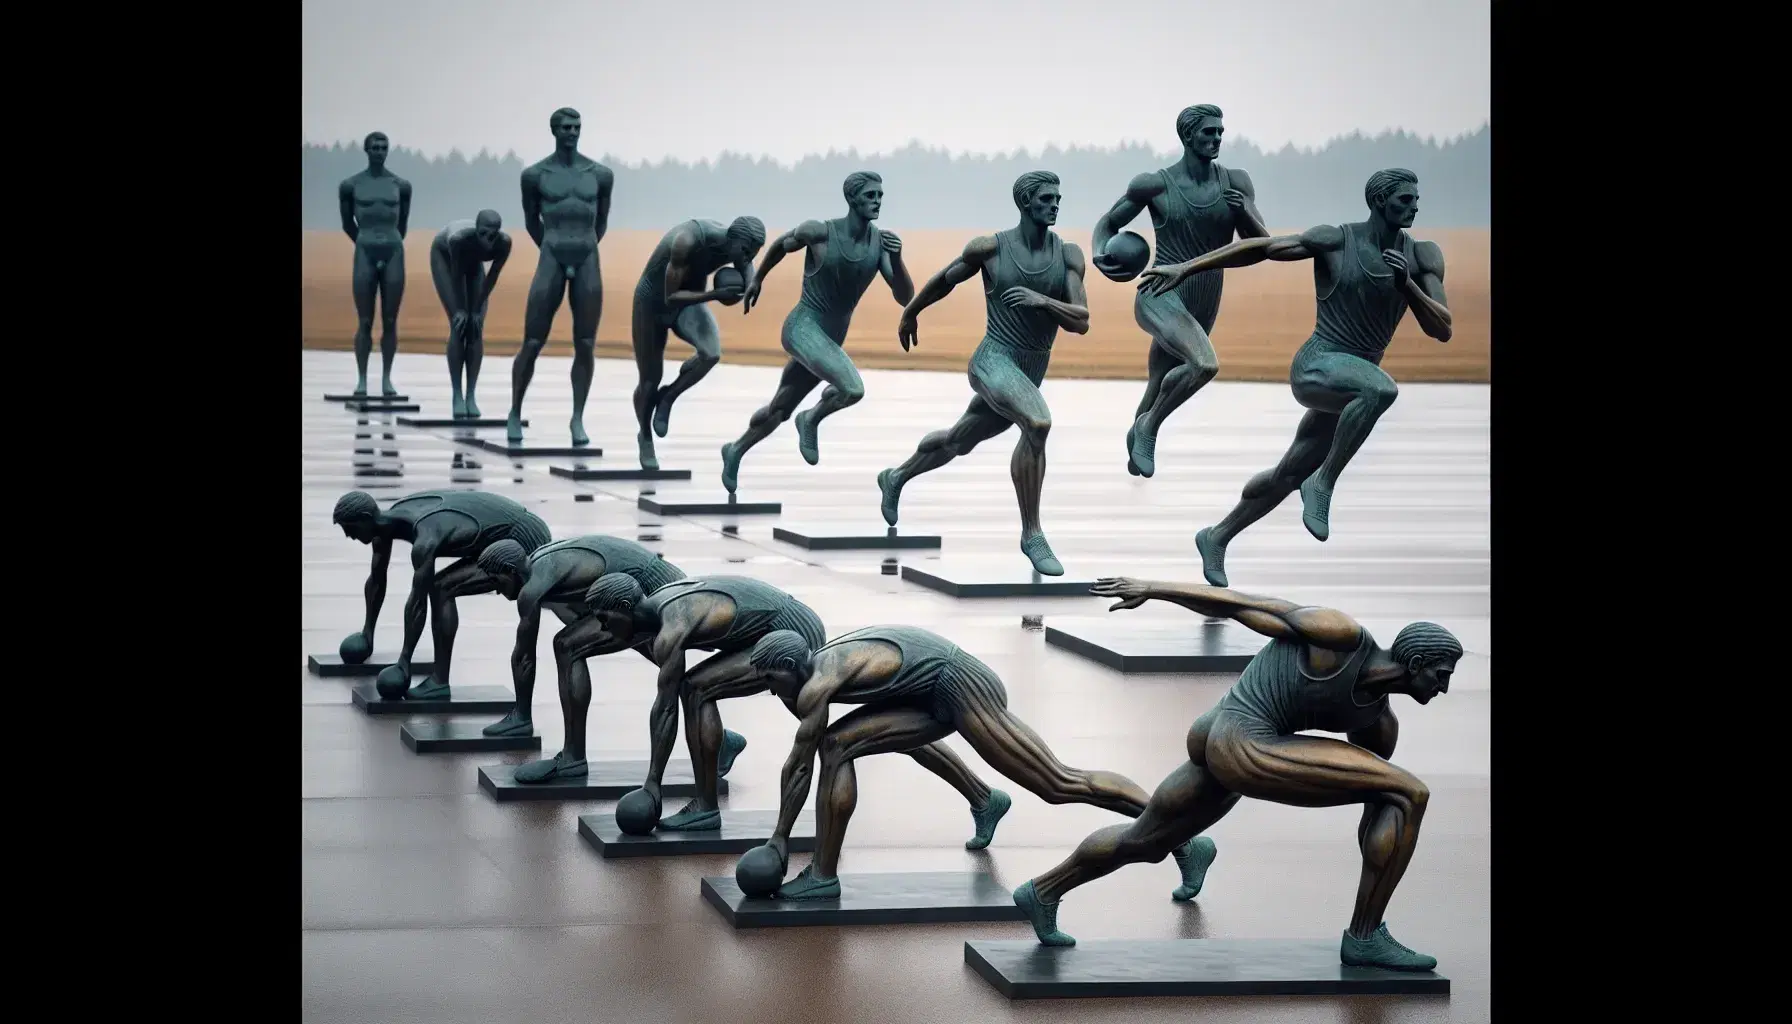 Estatuas de bronce tamaño real de atletas en poses deportivas: salida de carrera, lanzamiento de disco, salto de altura, boxeo y tiro con arco, en un parque.